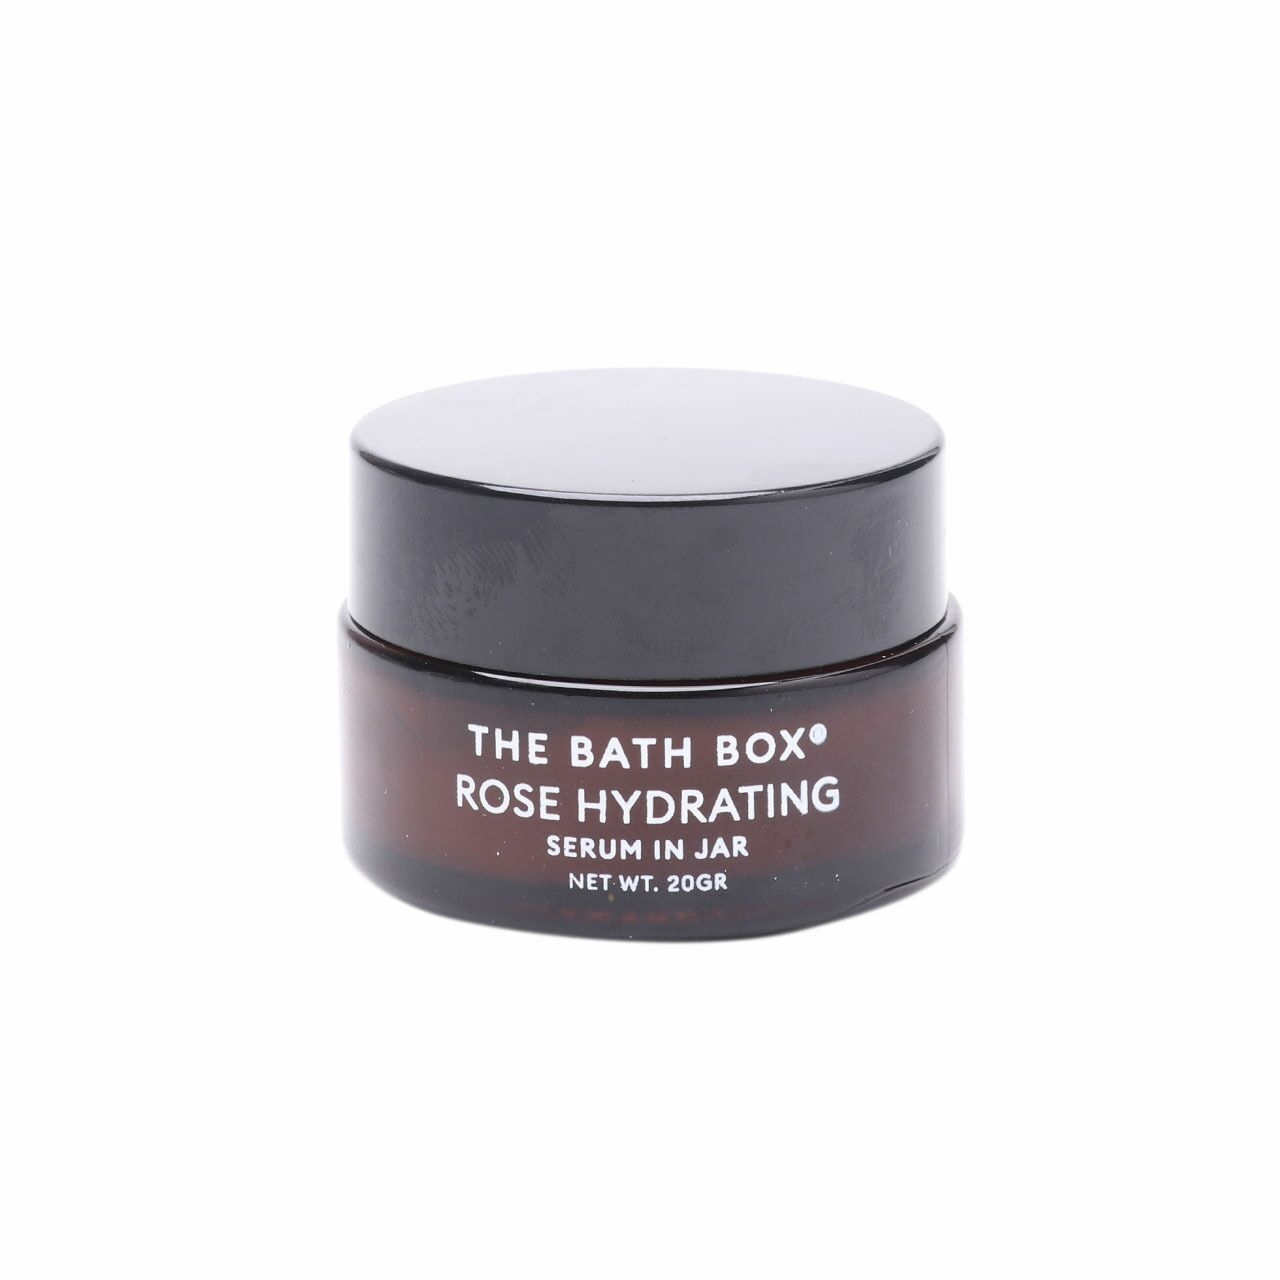 The Bath Box Rose Hydrating Serum In Jar Skin Care